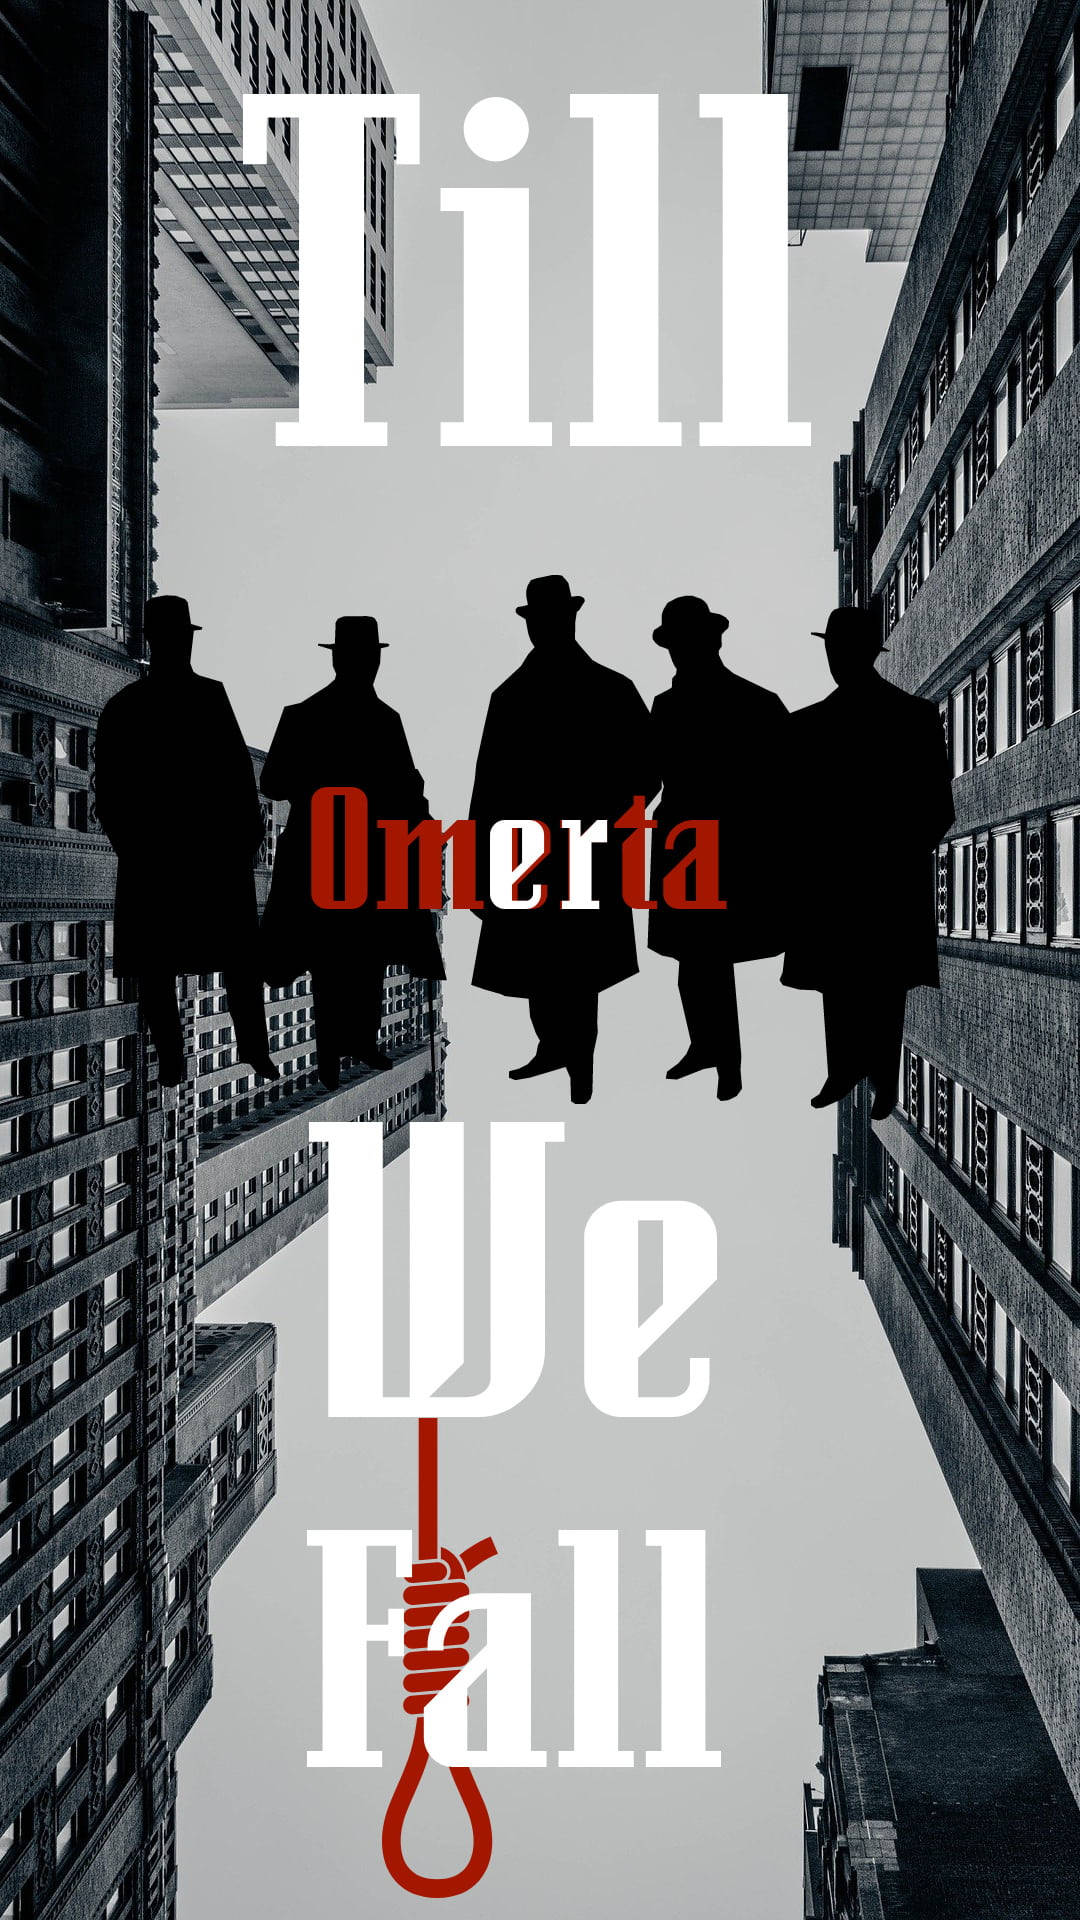 Omerta Fra Italiensk Mafia Wallpaper